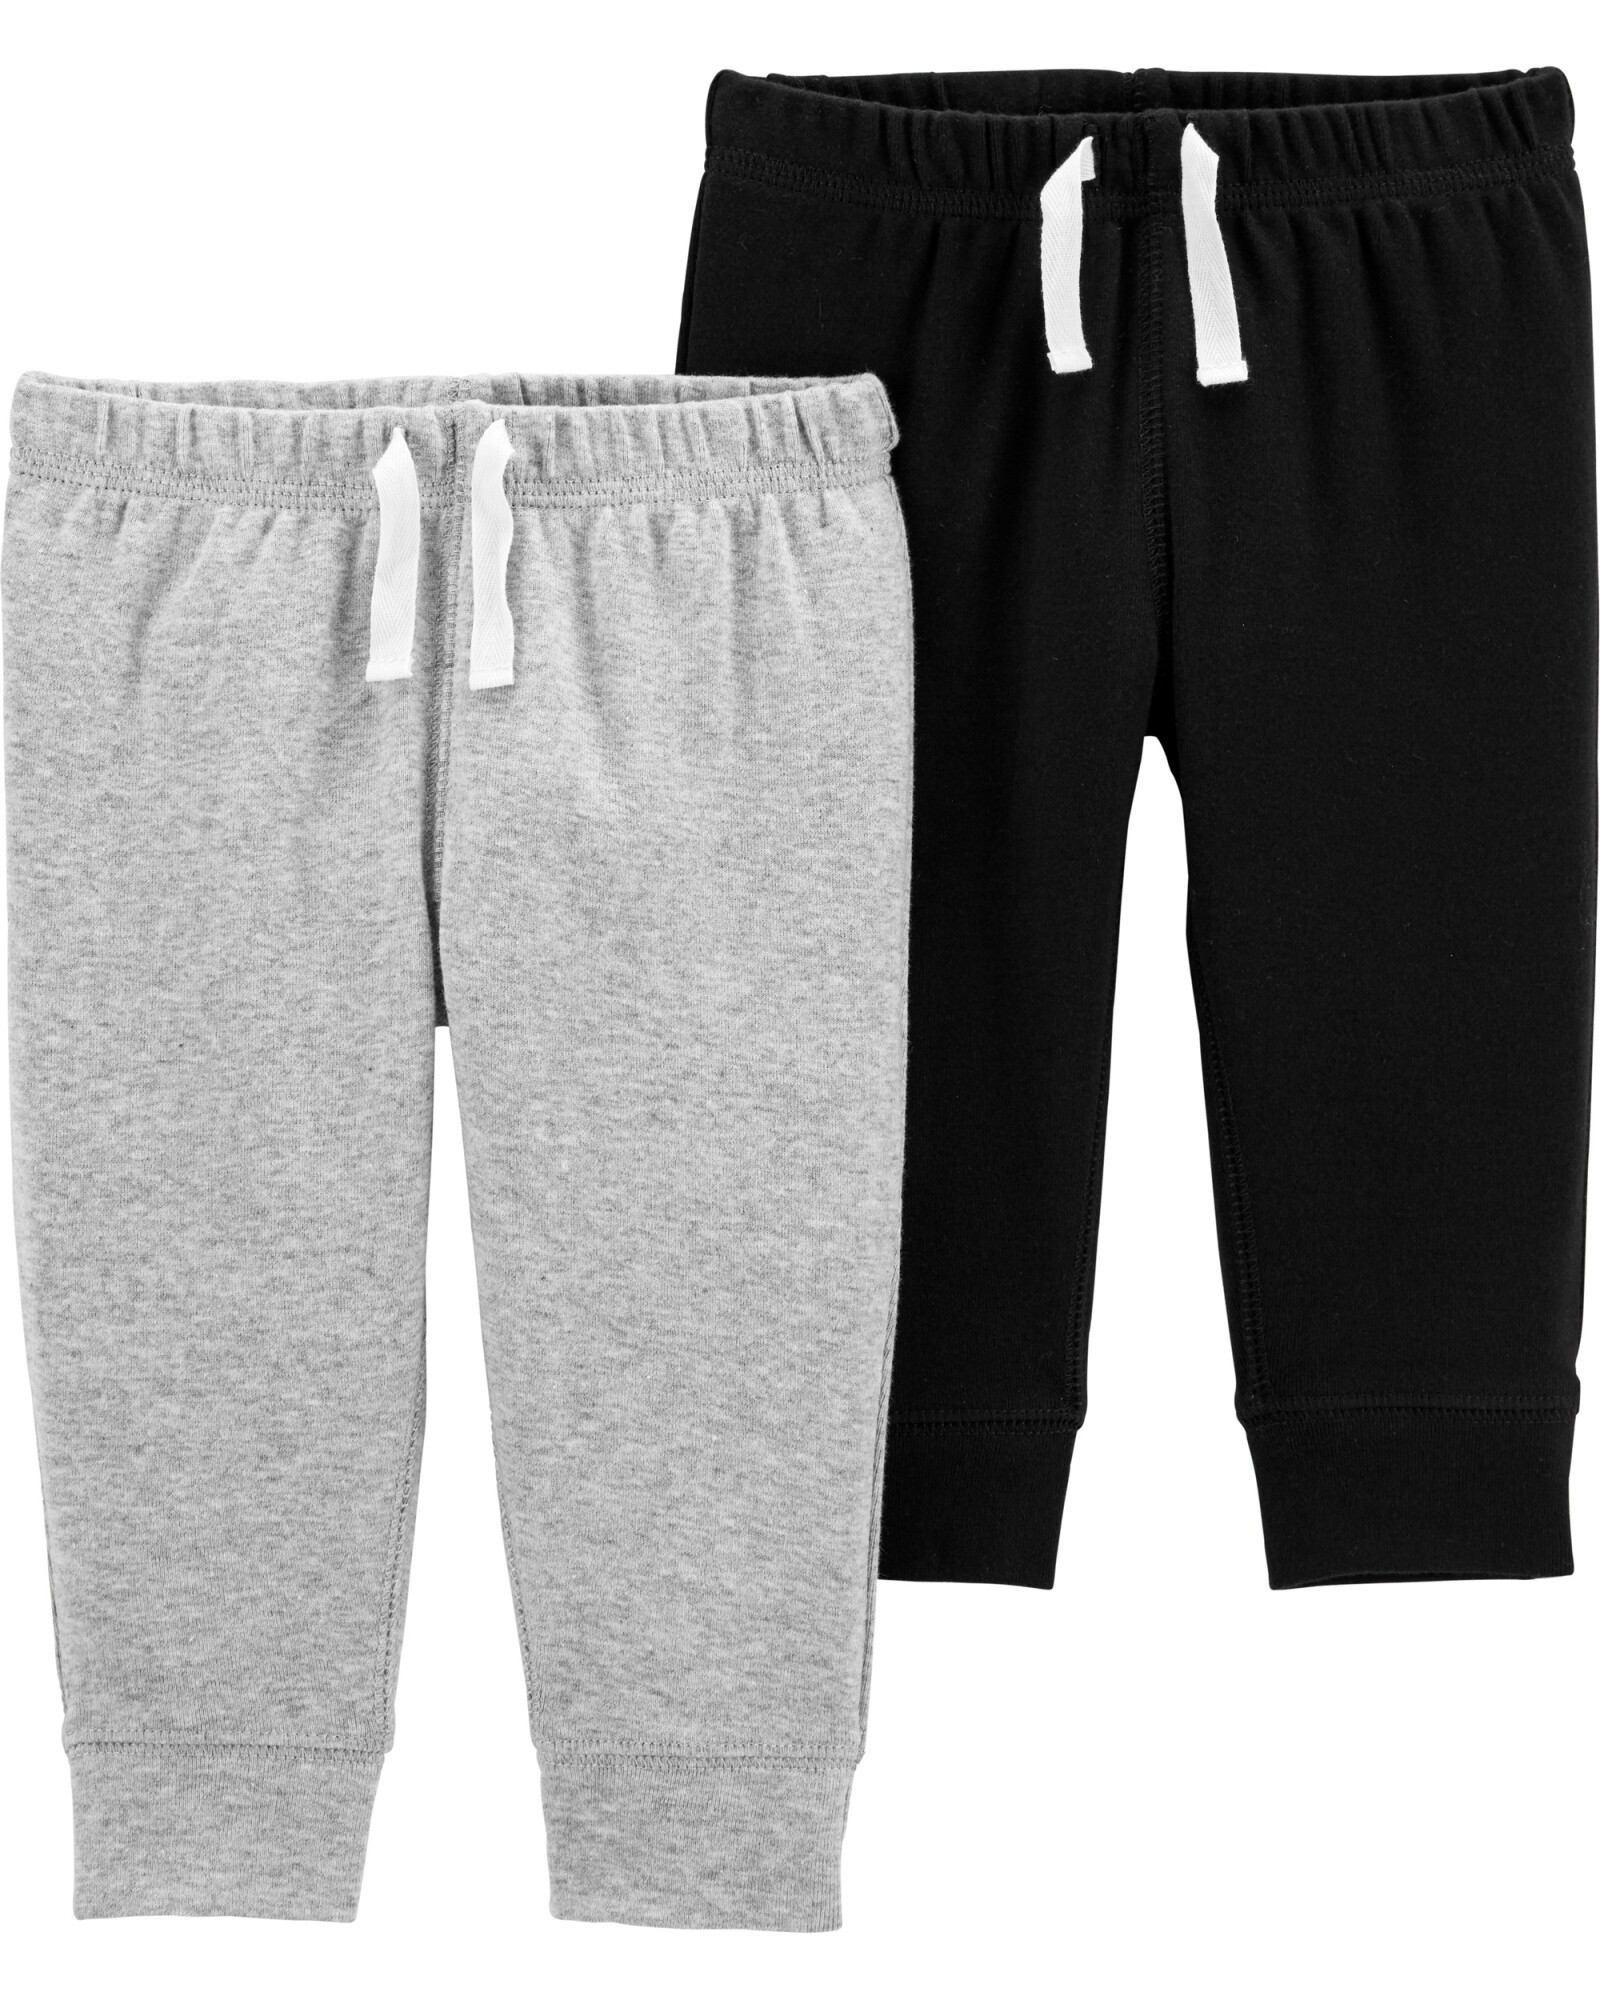 Pack dos pantalones de algodón, negro y gris Sin color